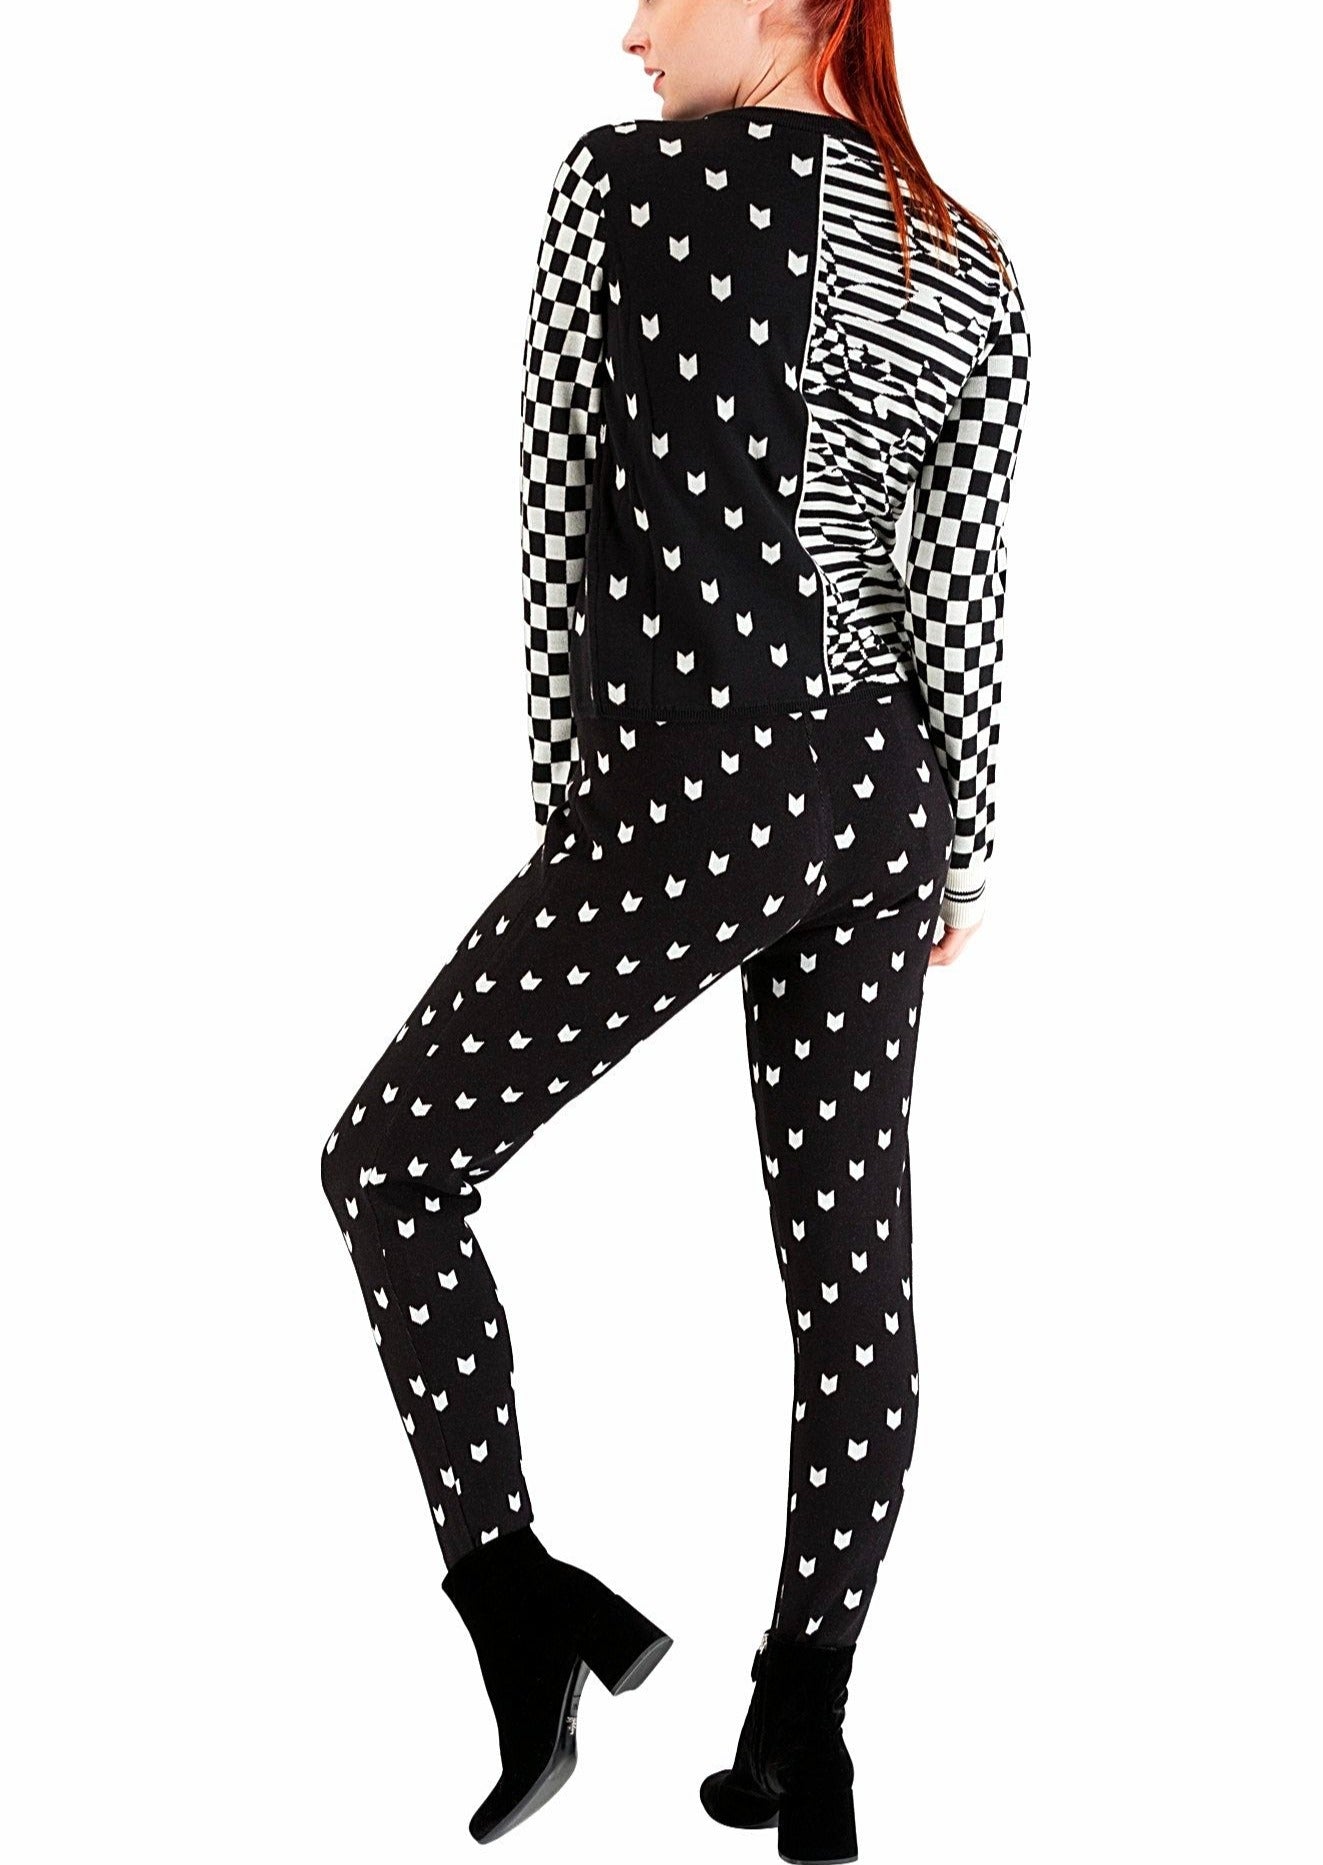 Black & white leggings - 60%off